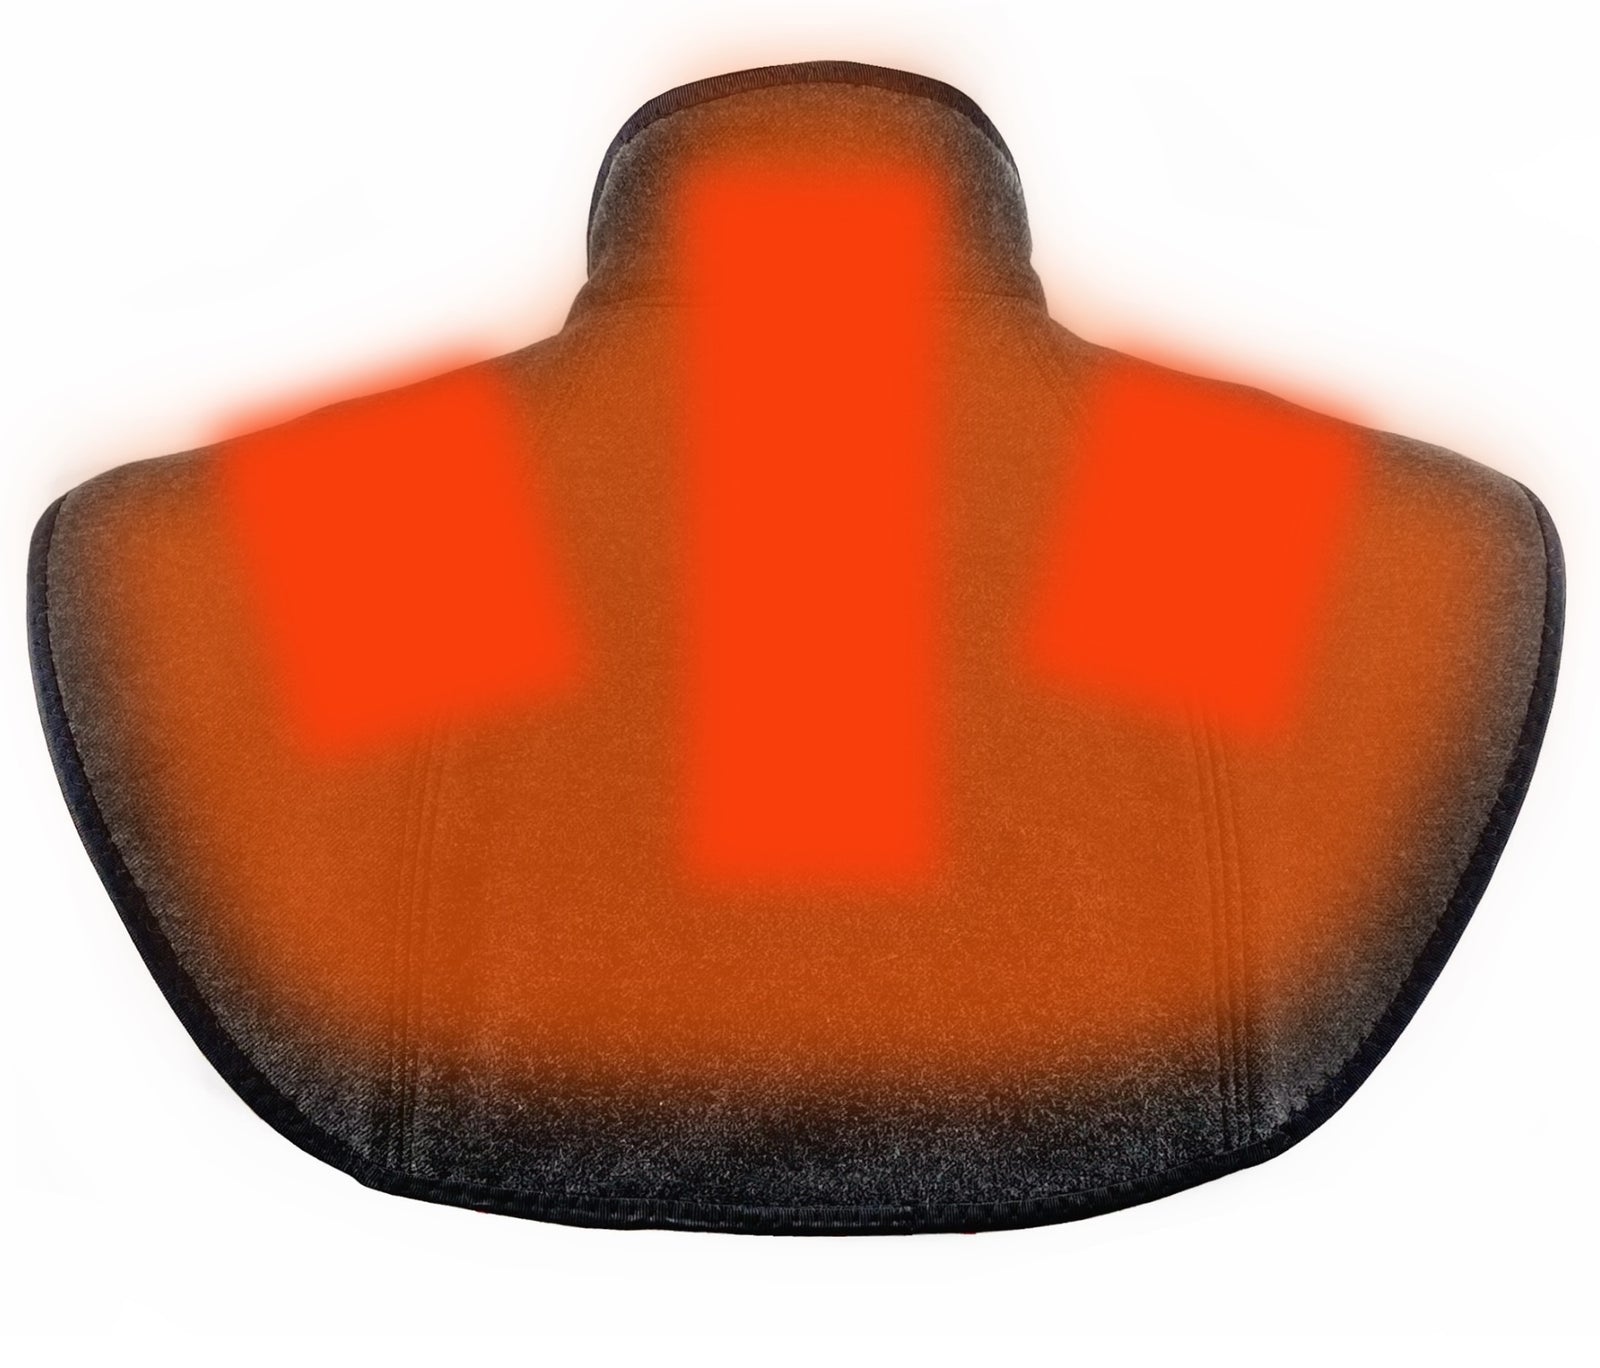 Almohadilla térmica móvil de infrarrojos lejanos para cuello y hombros.